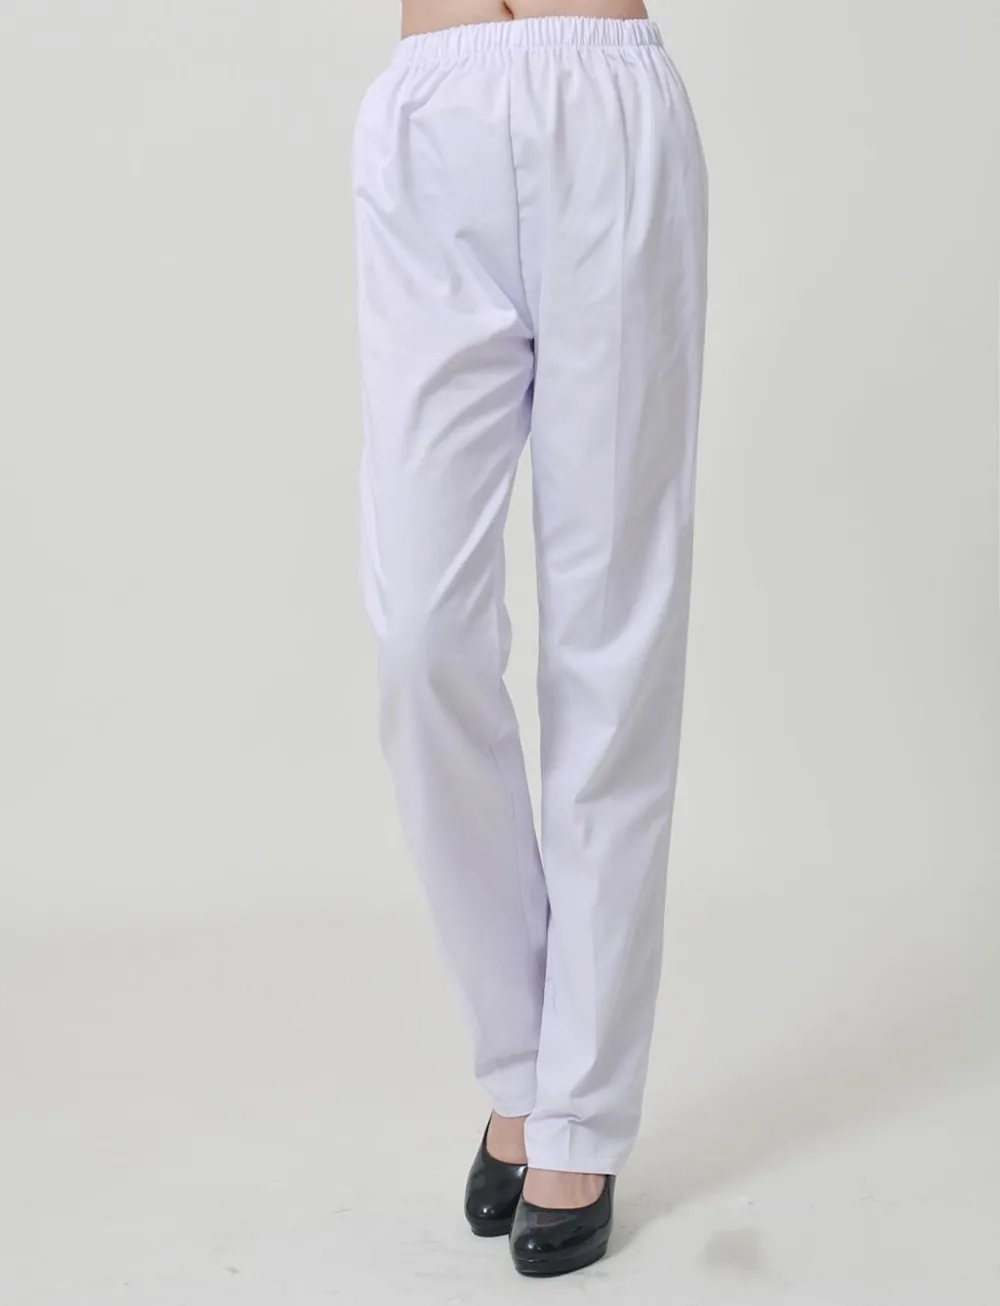 Женская медицинская форма для больниц, медсестры, брюки белого цвета, рабочие брюки, эластичные медицинские брюки, женские брюки из хлопка